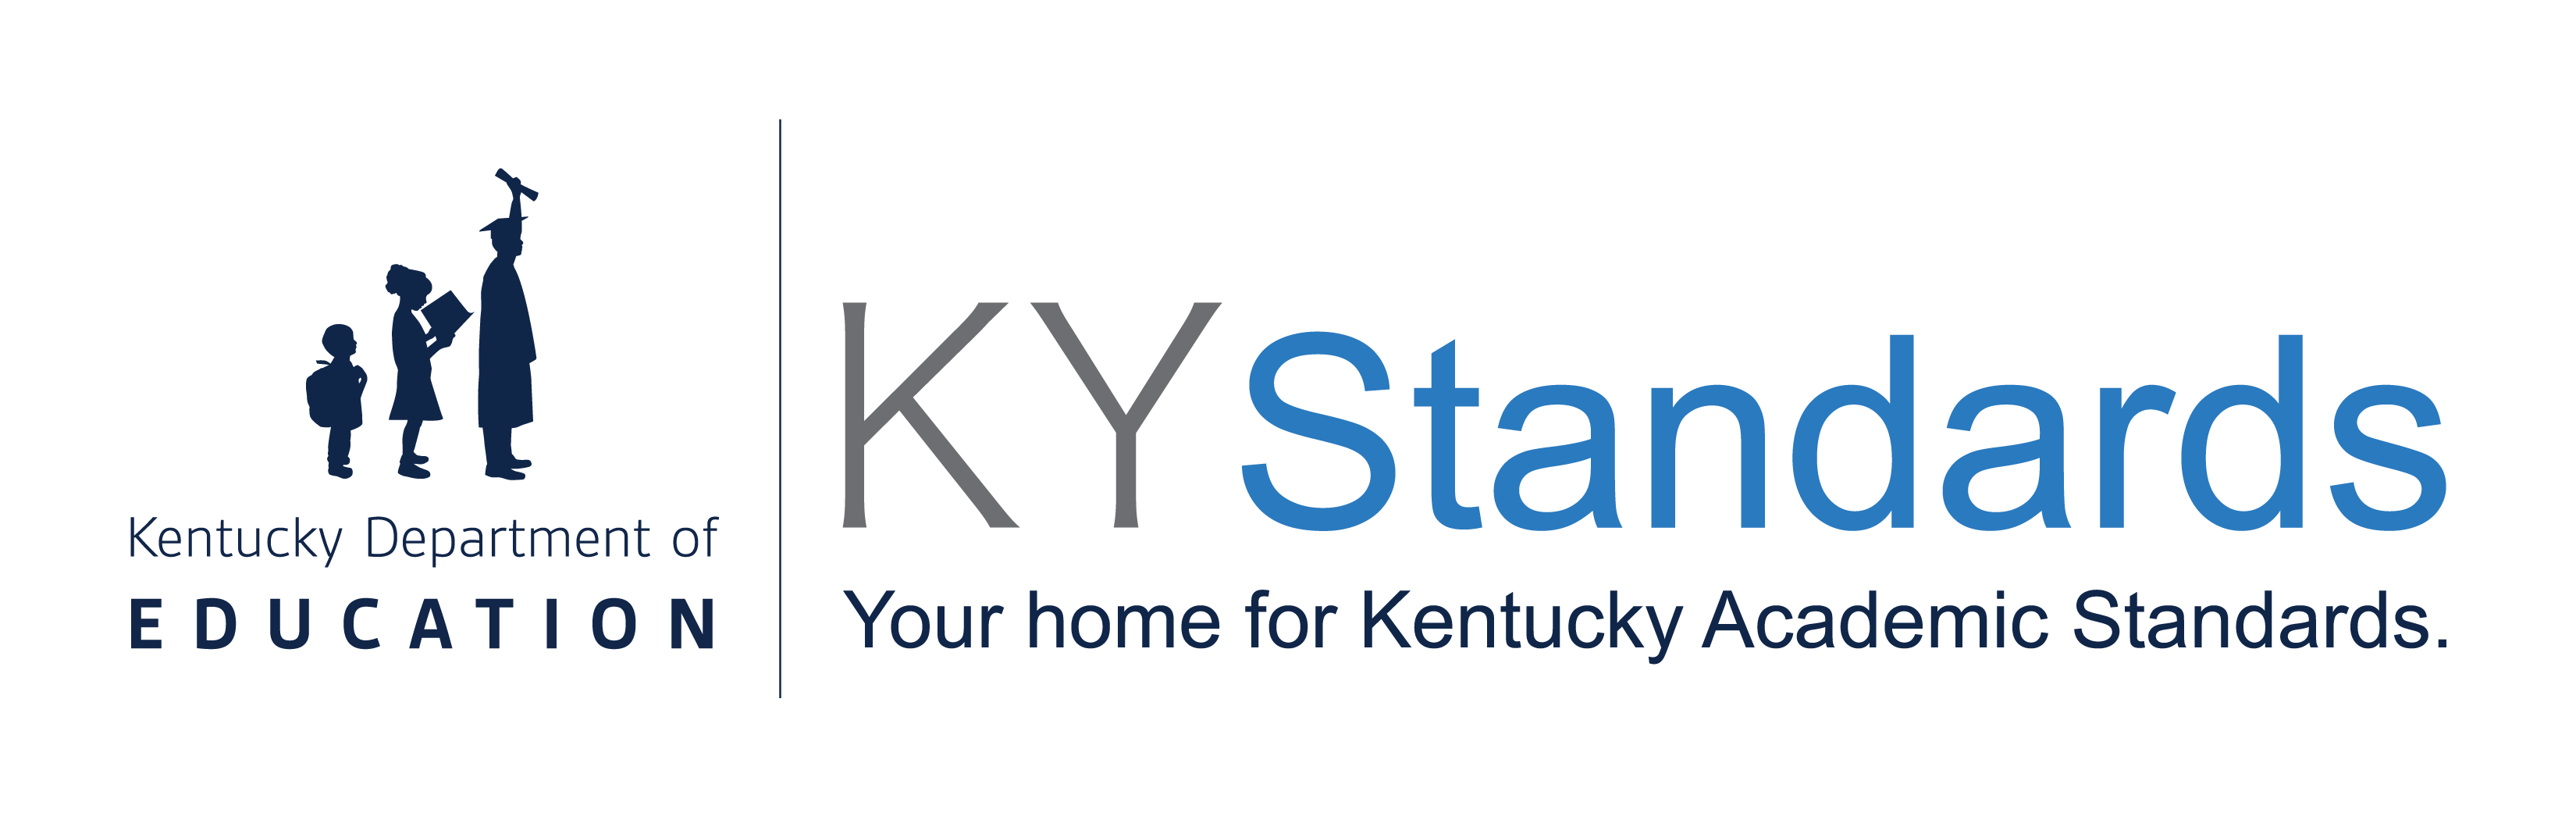 KYstandards Logo